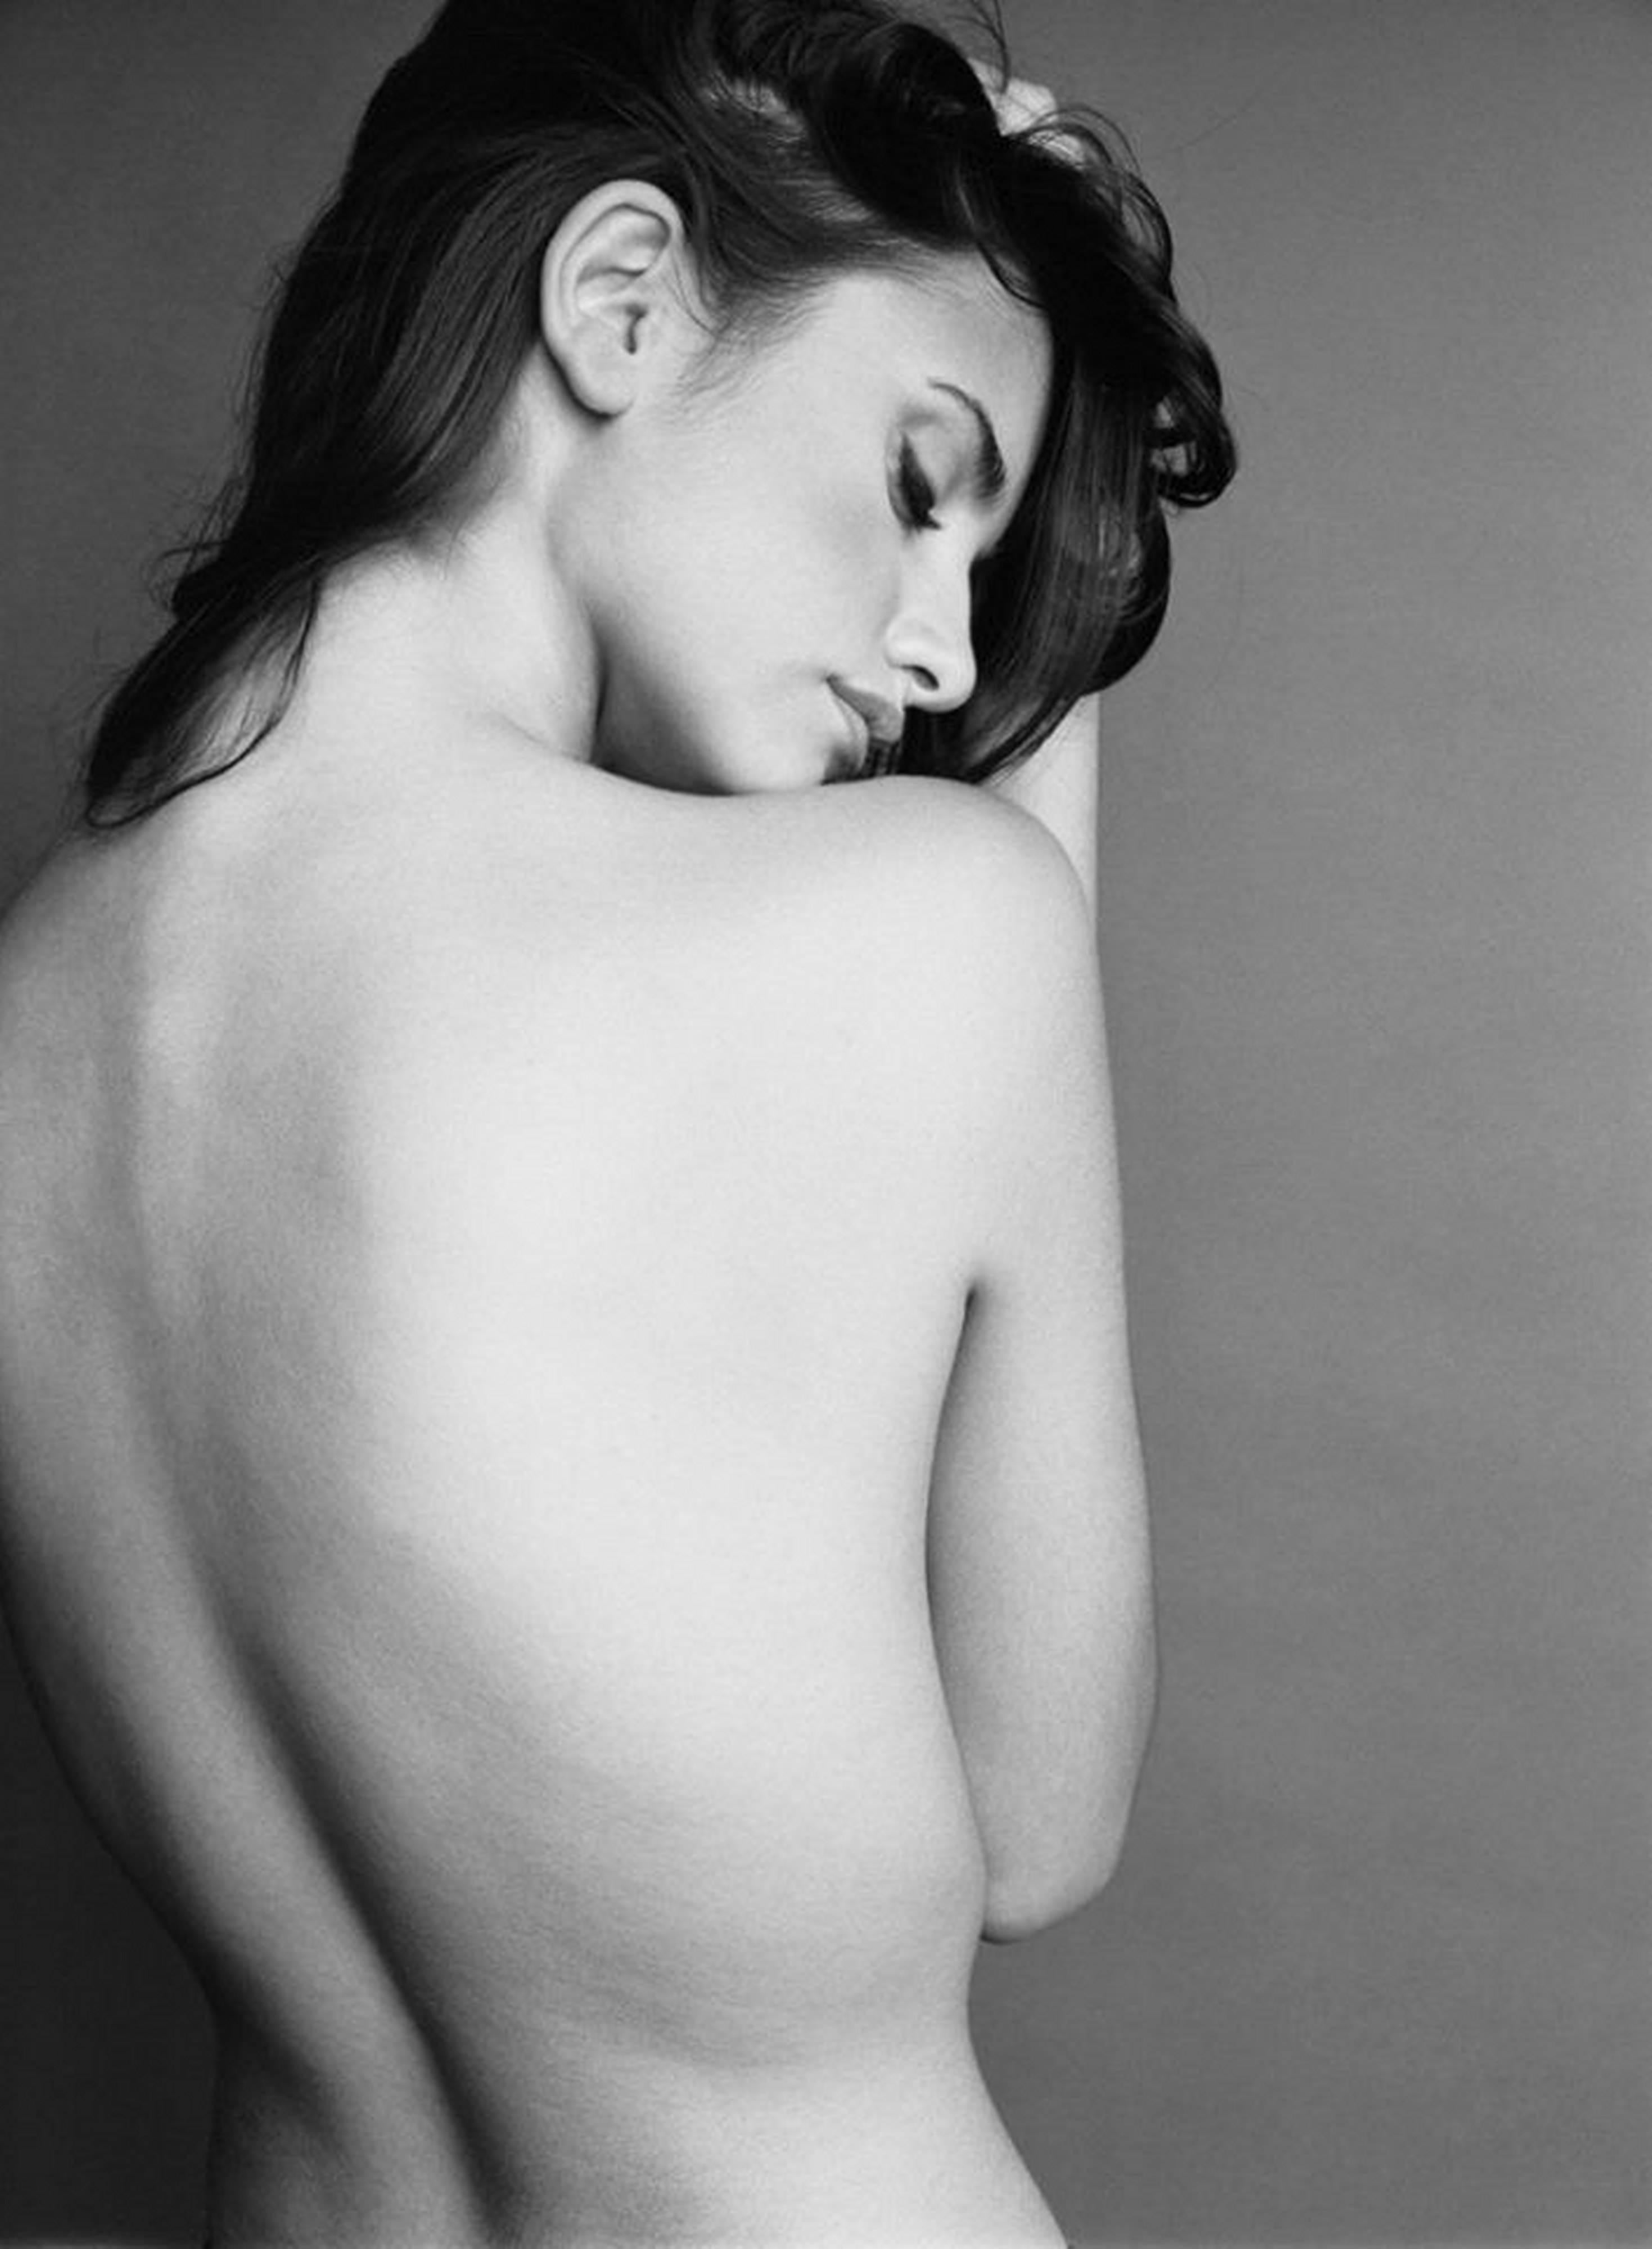 Penelope Cruz II - b&w photo of the nude actress, fine art photography, 1998